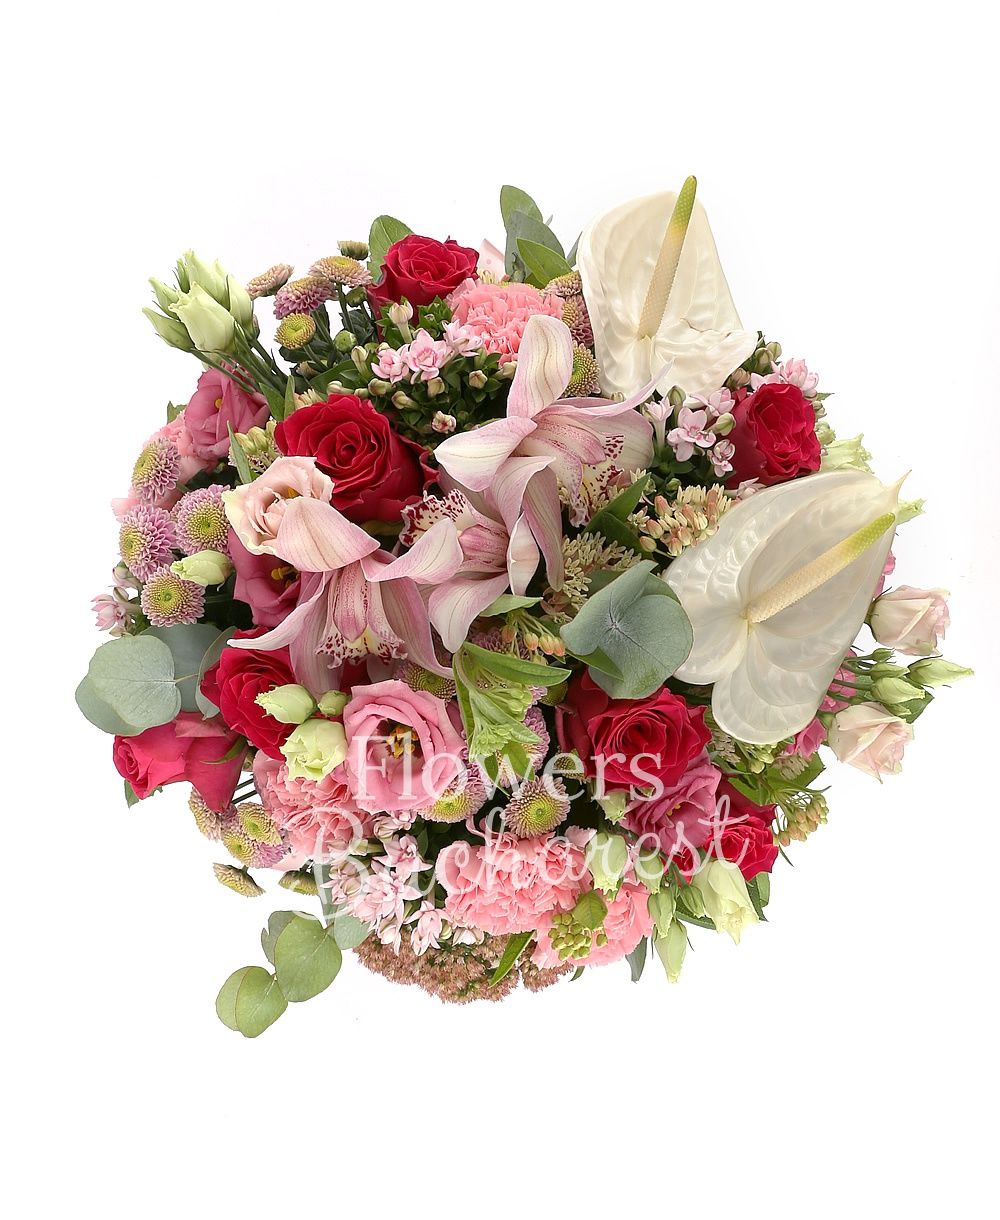 7 red roses, 5 pink bouvardia, 5 pink carnations, 5 pink santini, 2 white anthurium, pink cymbidium, greenery